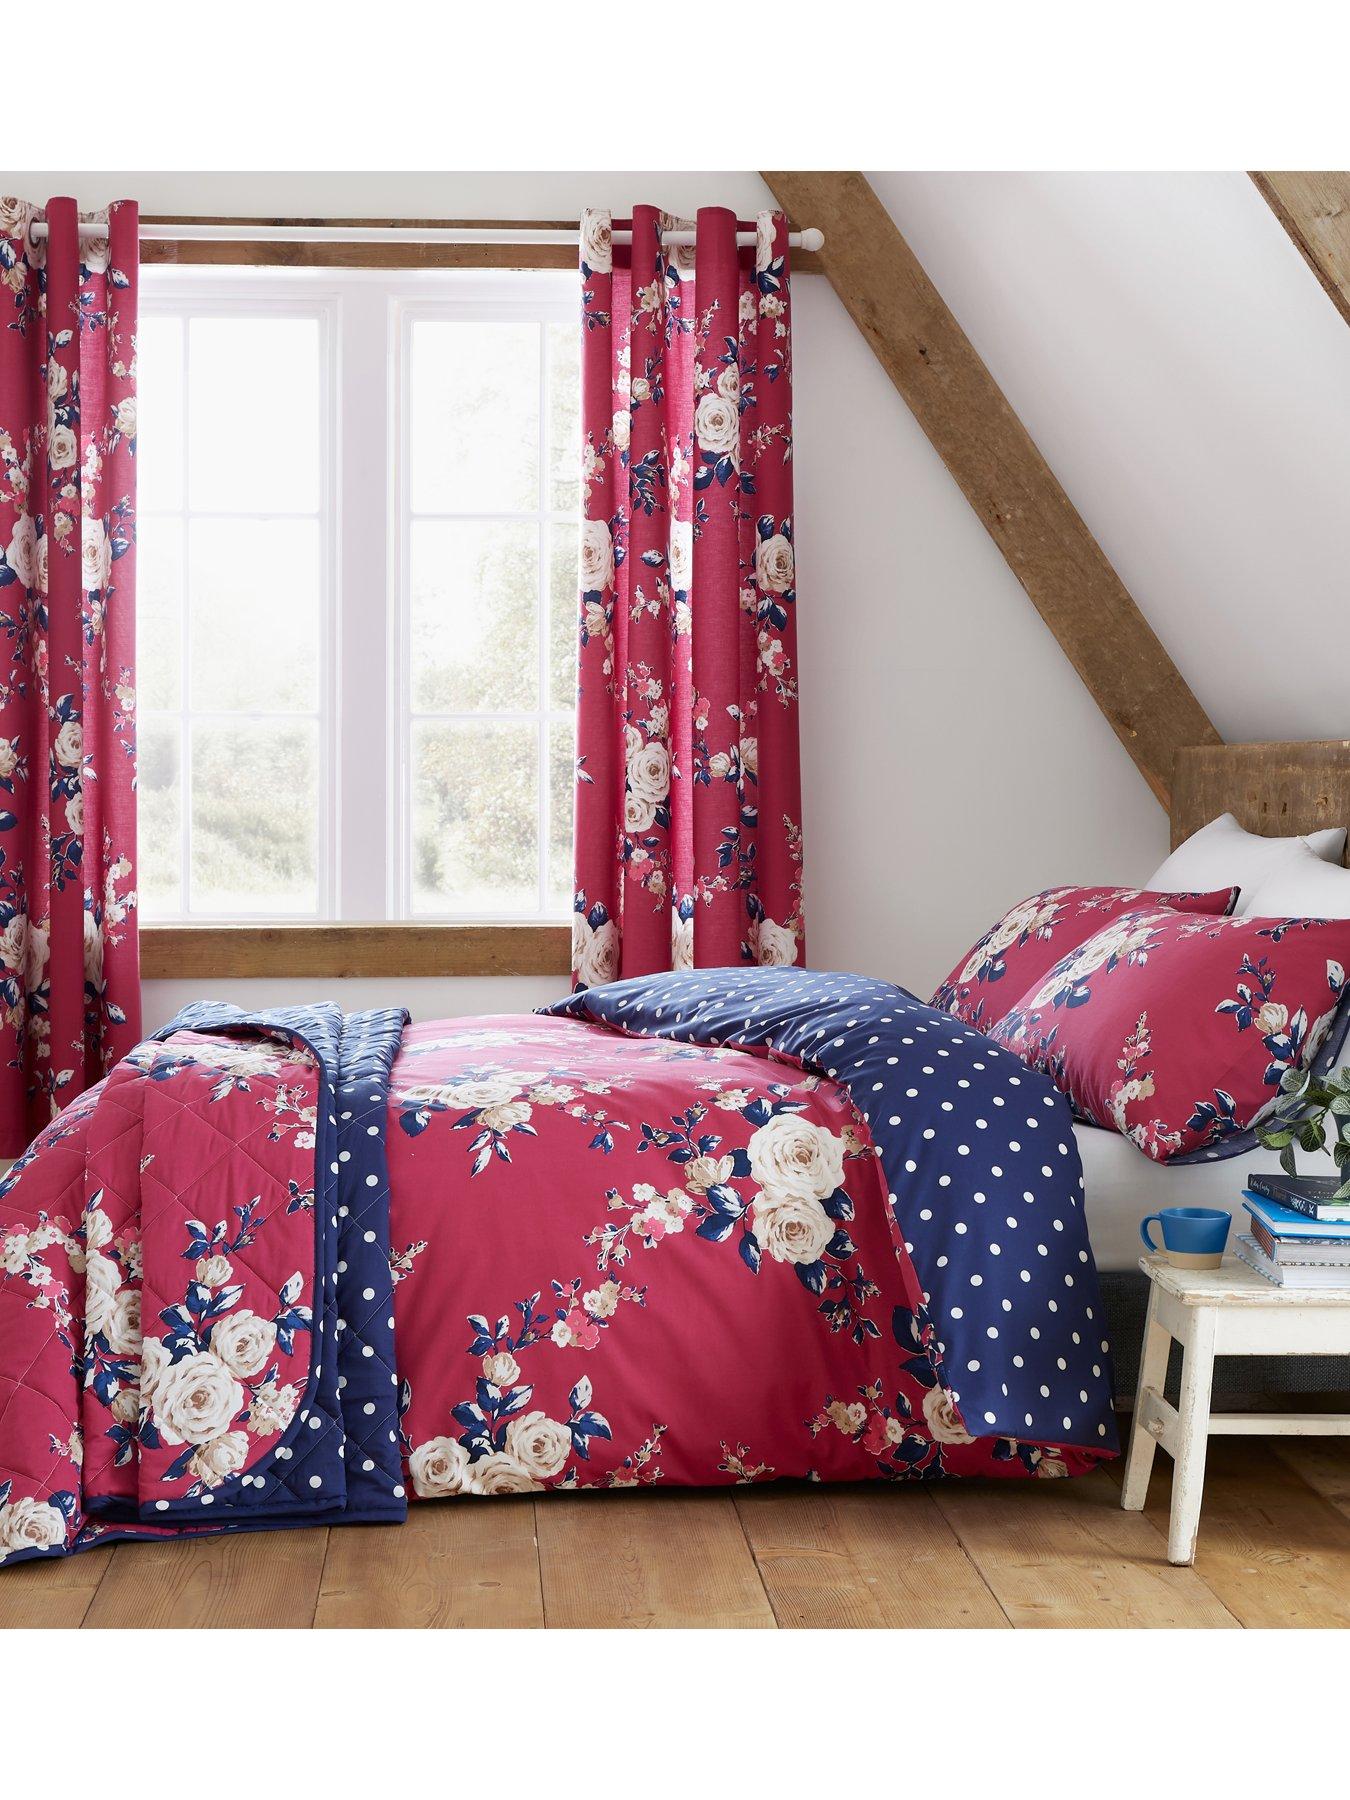 Home Furniture Diy Home Bedding Bed Linens Sets Bedding Sets